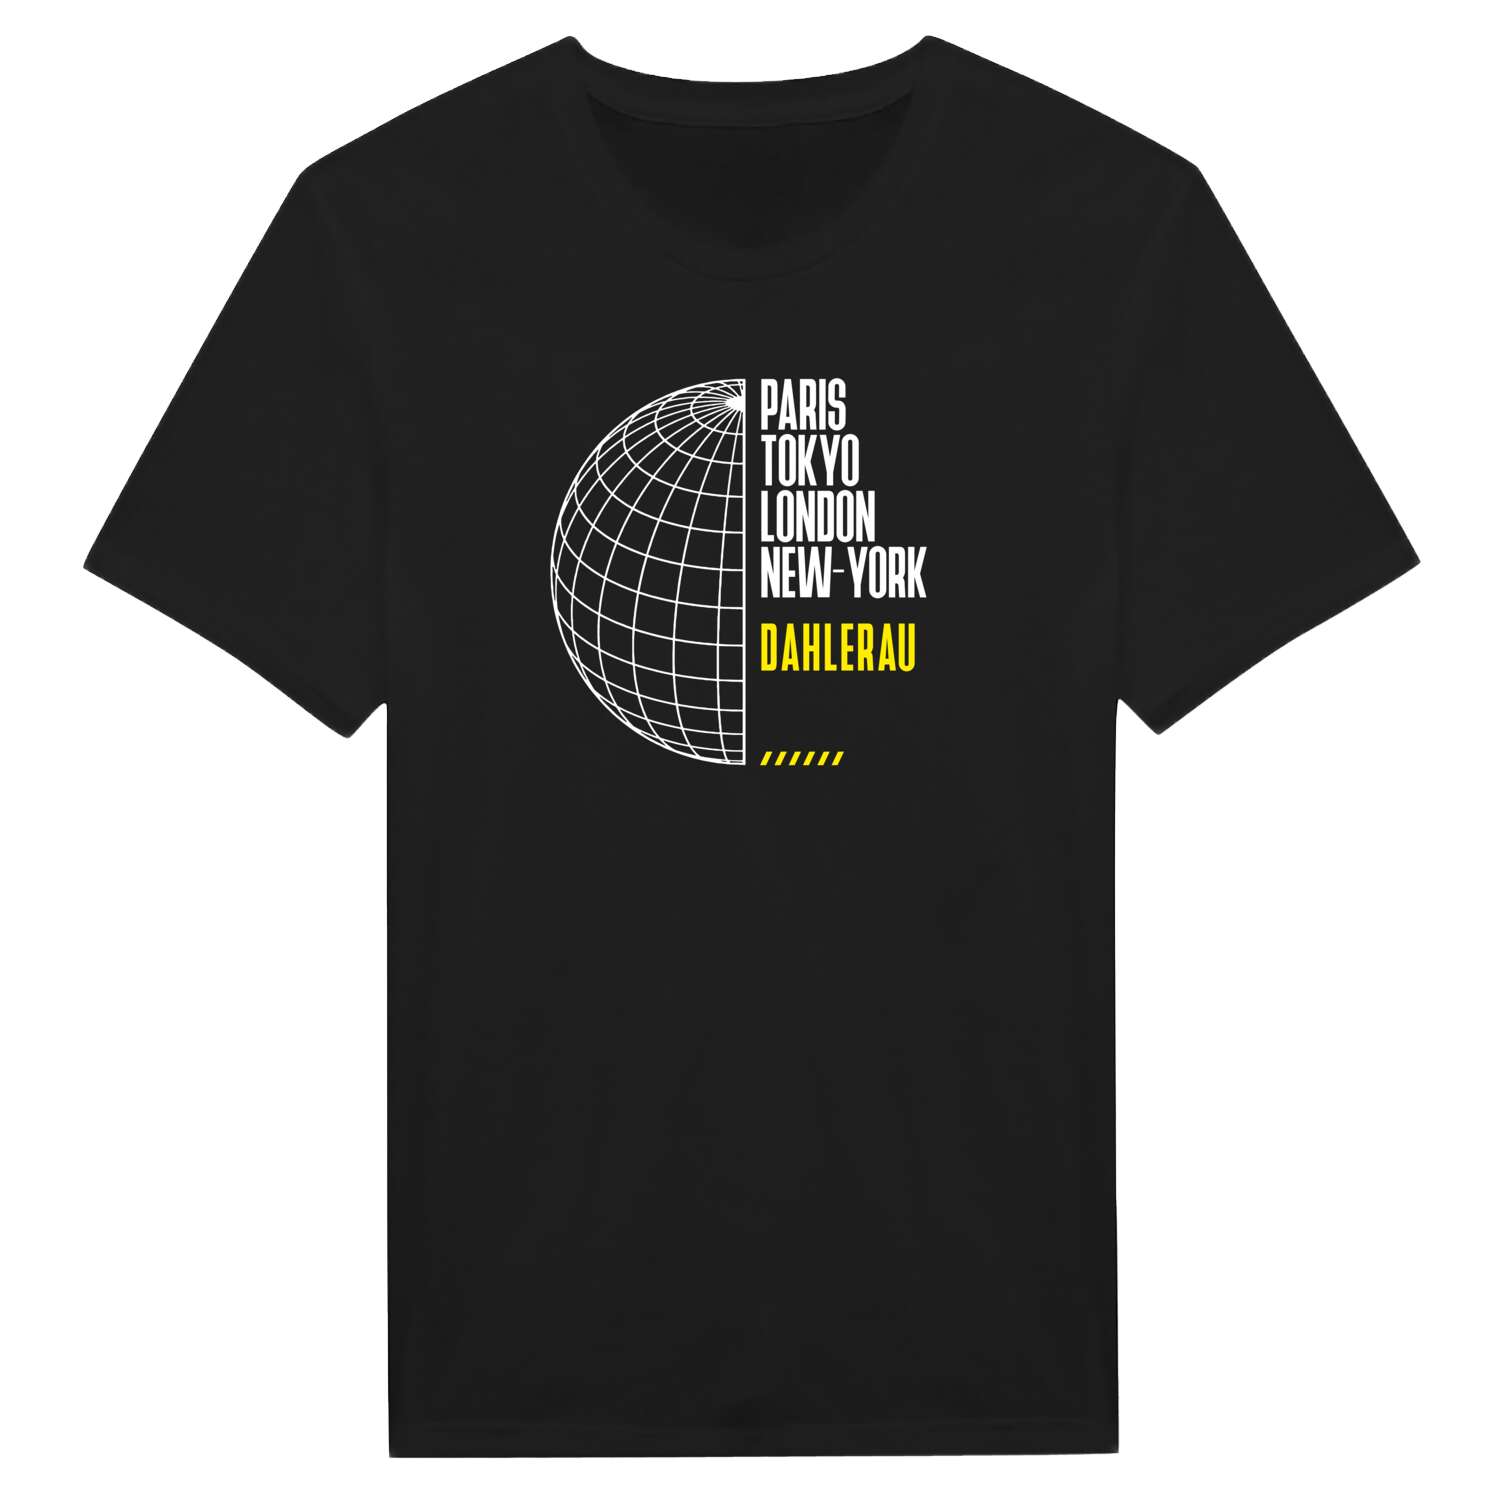 Dahlerau T-Shirt »Paris Tokyo London«